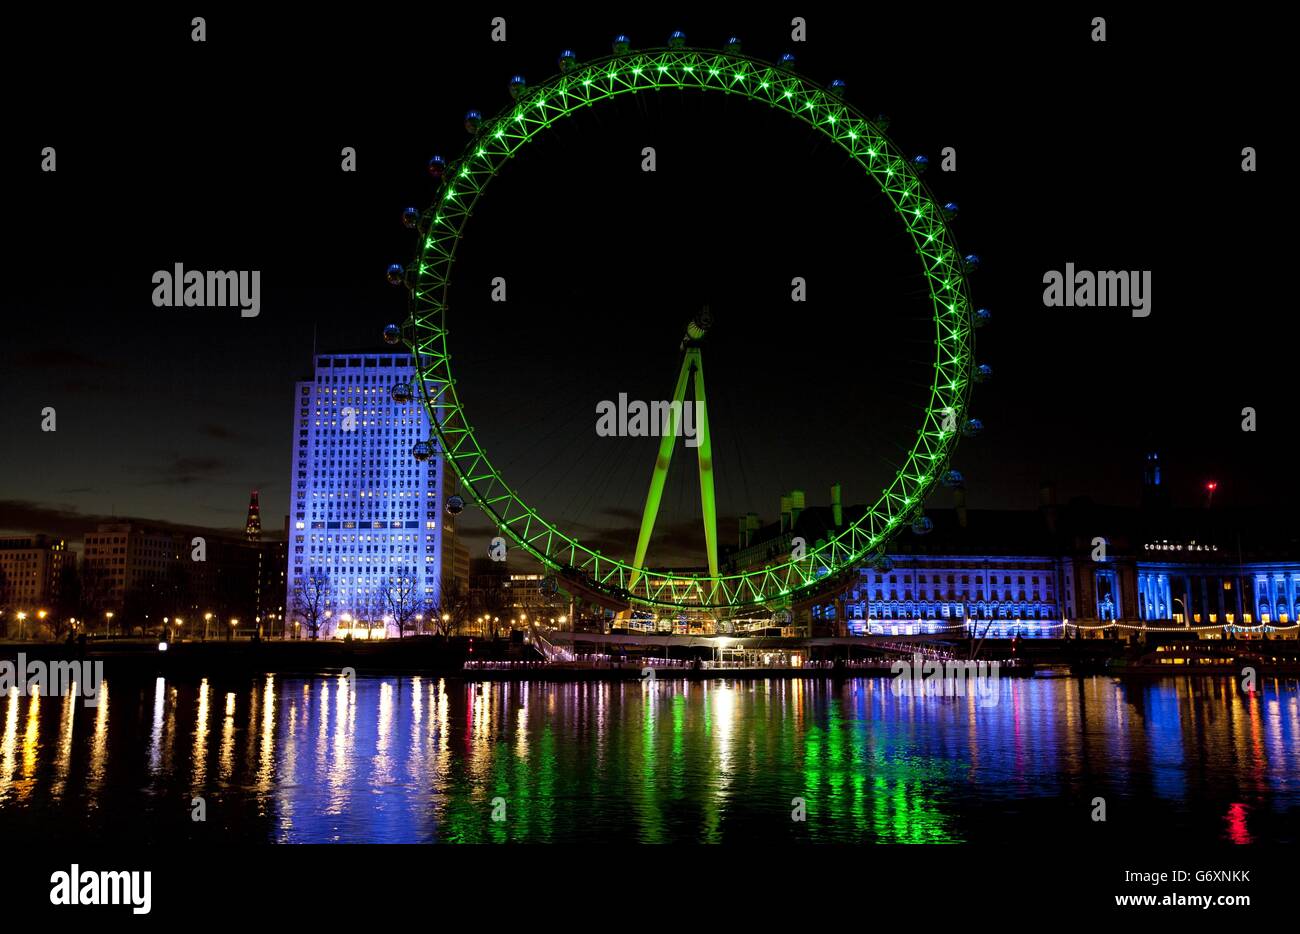 El EDF London Eye en el centro de Londres está iluminado en verde por Tourism Ireland para celebrar el día de San Patricio que es el lunes 17. Foto de stock